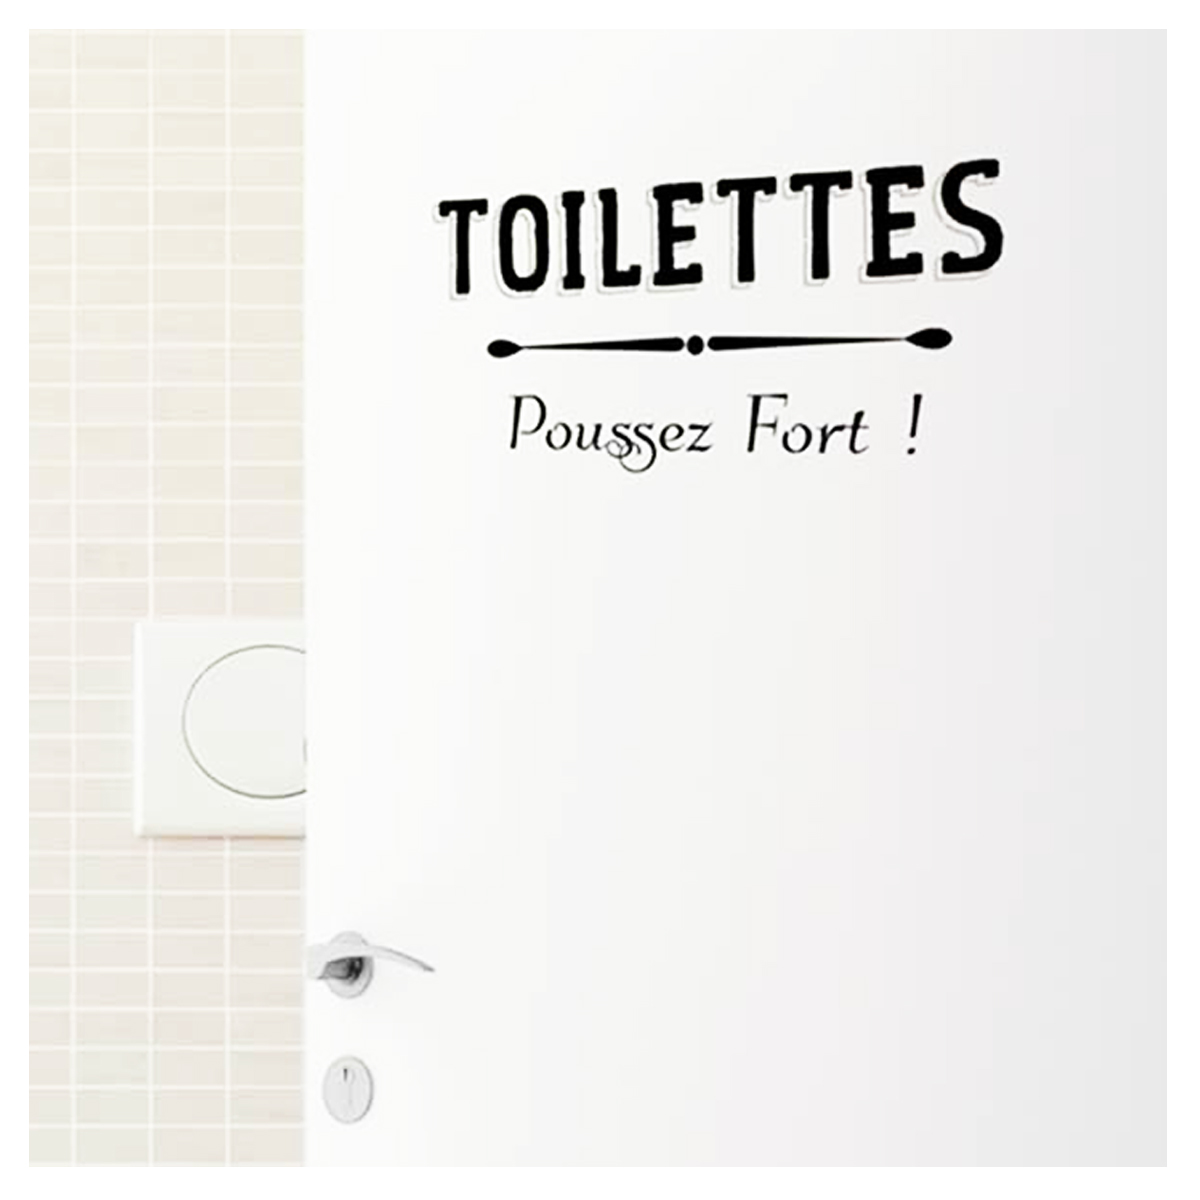 Planche de stickers porte \'Messages\' ( Toilettes - Poussez fort !) - 20x70 cm - [P9419]